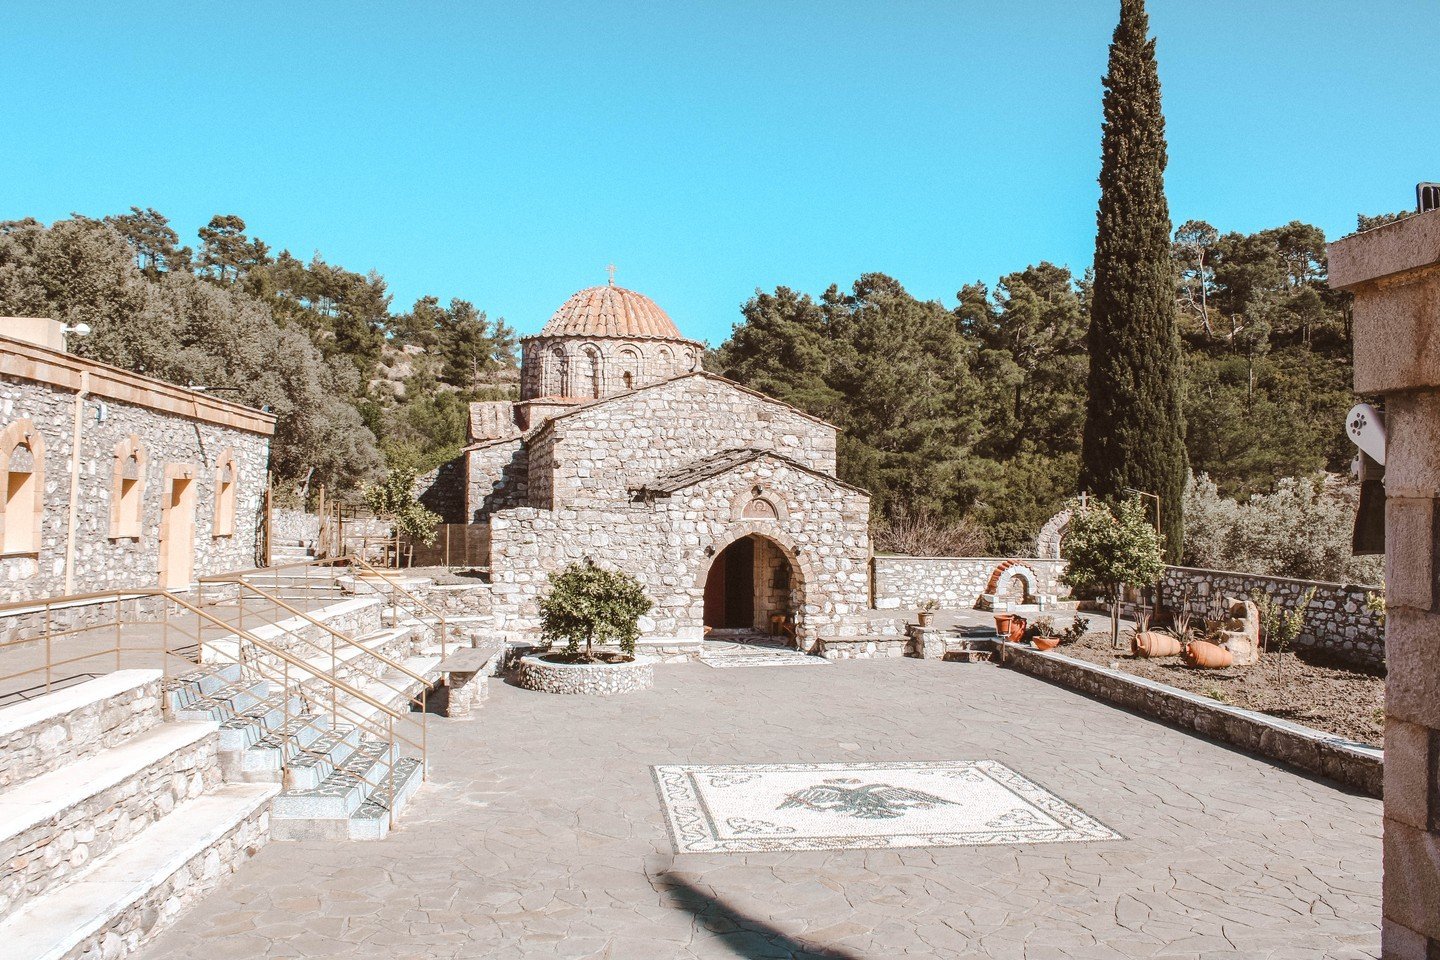 Das Kloster Moni Thari auf Rhodos.
.
Die hiesige Kirche ist mindestens 1000 Jahre alt. Der Legende nach wurde sie von einer byzantinischen Prinzessin erbaut, die an einer t&ouml;dlichen Krankheit litt. Nachdem sie genesen war, konvertierte sie zum ch